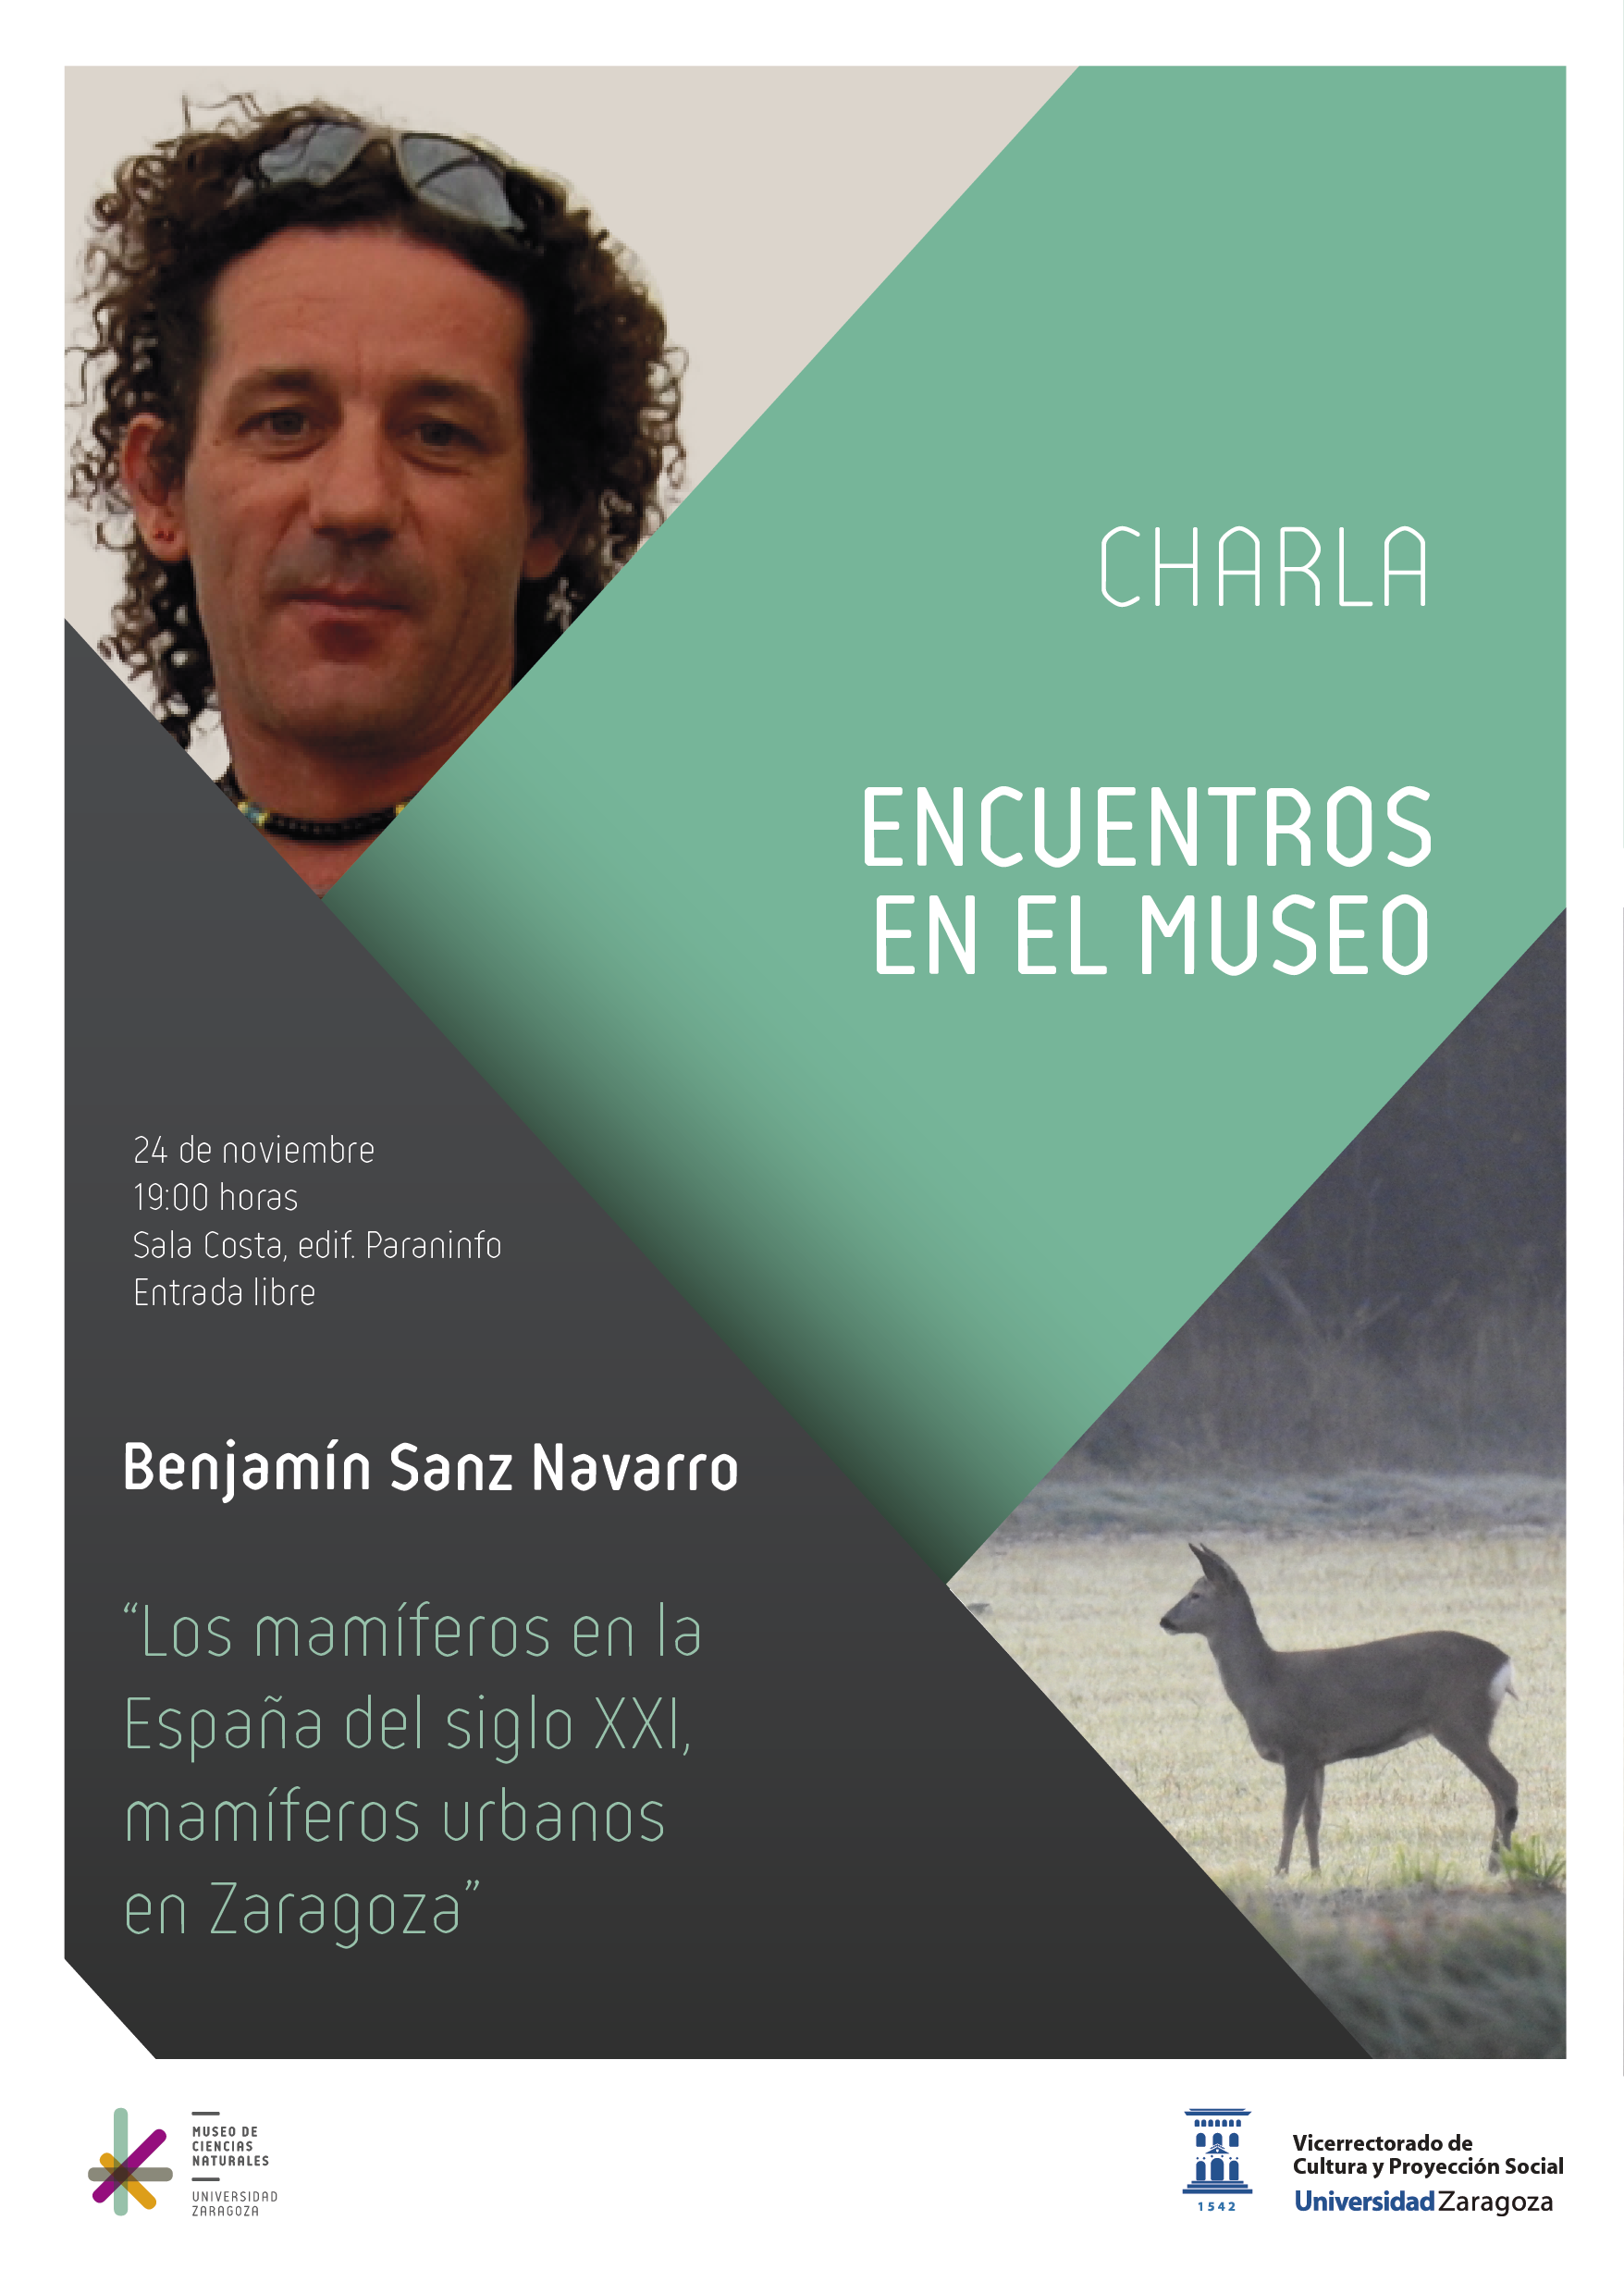 Los mamíferos en la España del siglo XXI, mamíferos urbanos en Zaragoza”, nueva actividad de Encuentros en el Museo